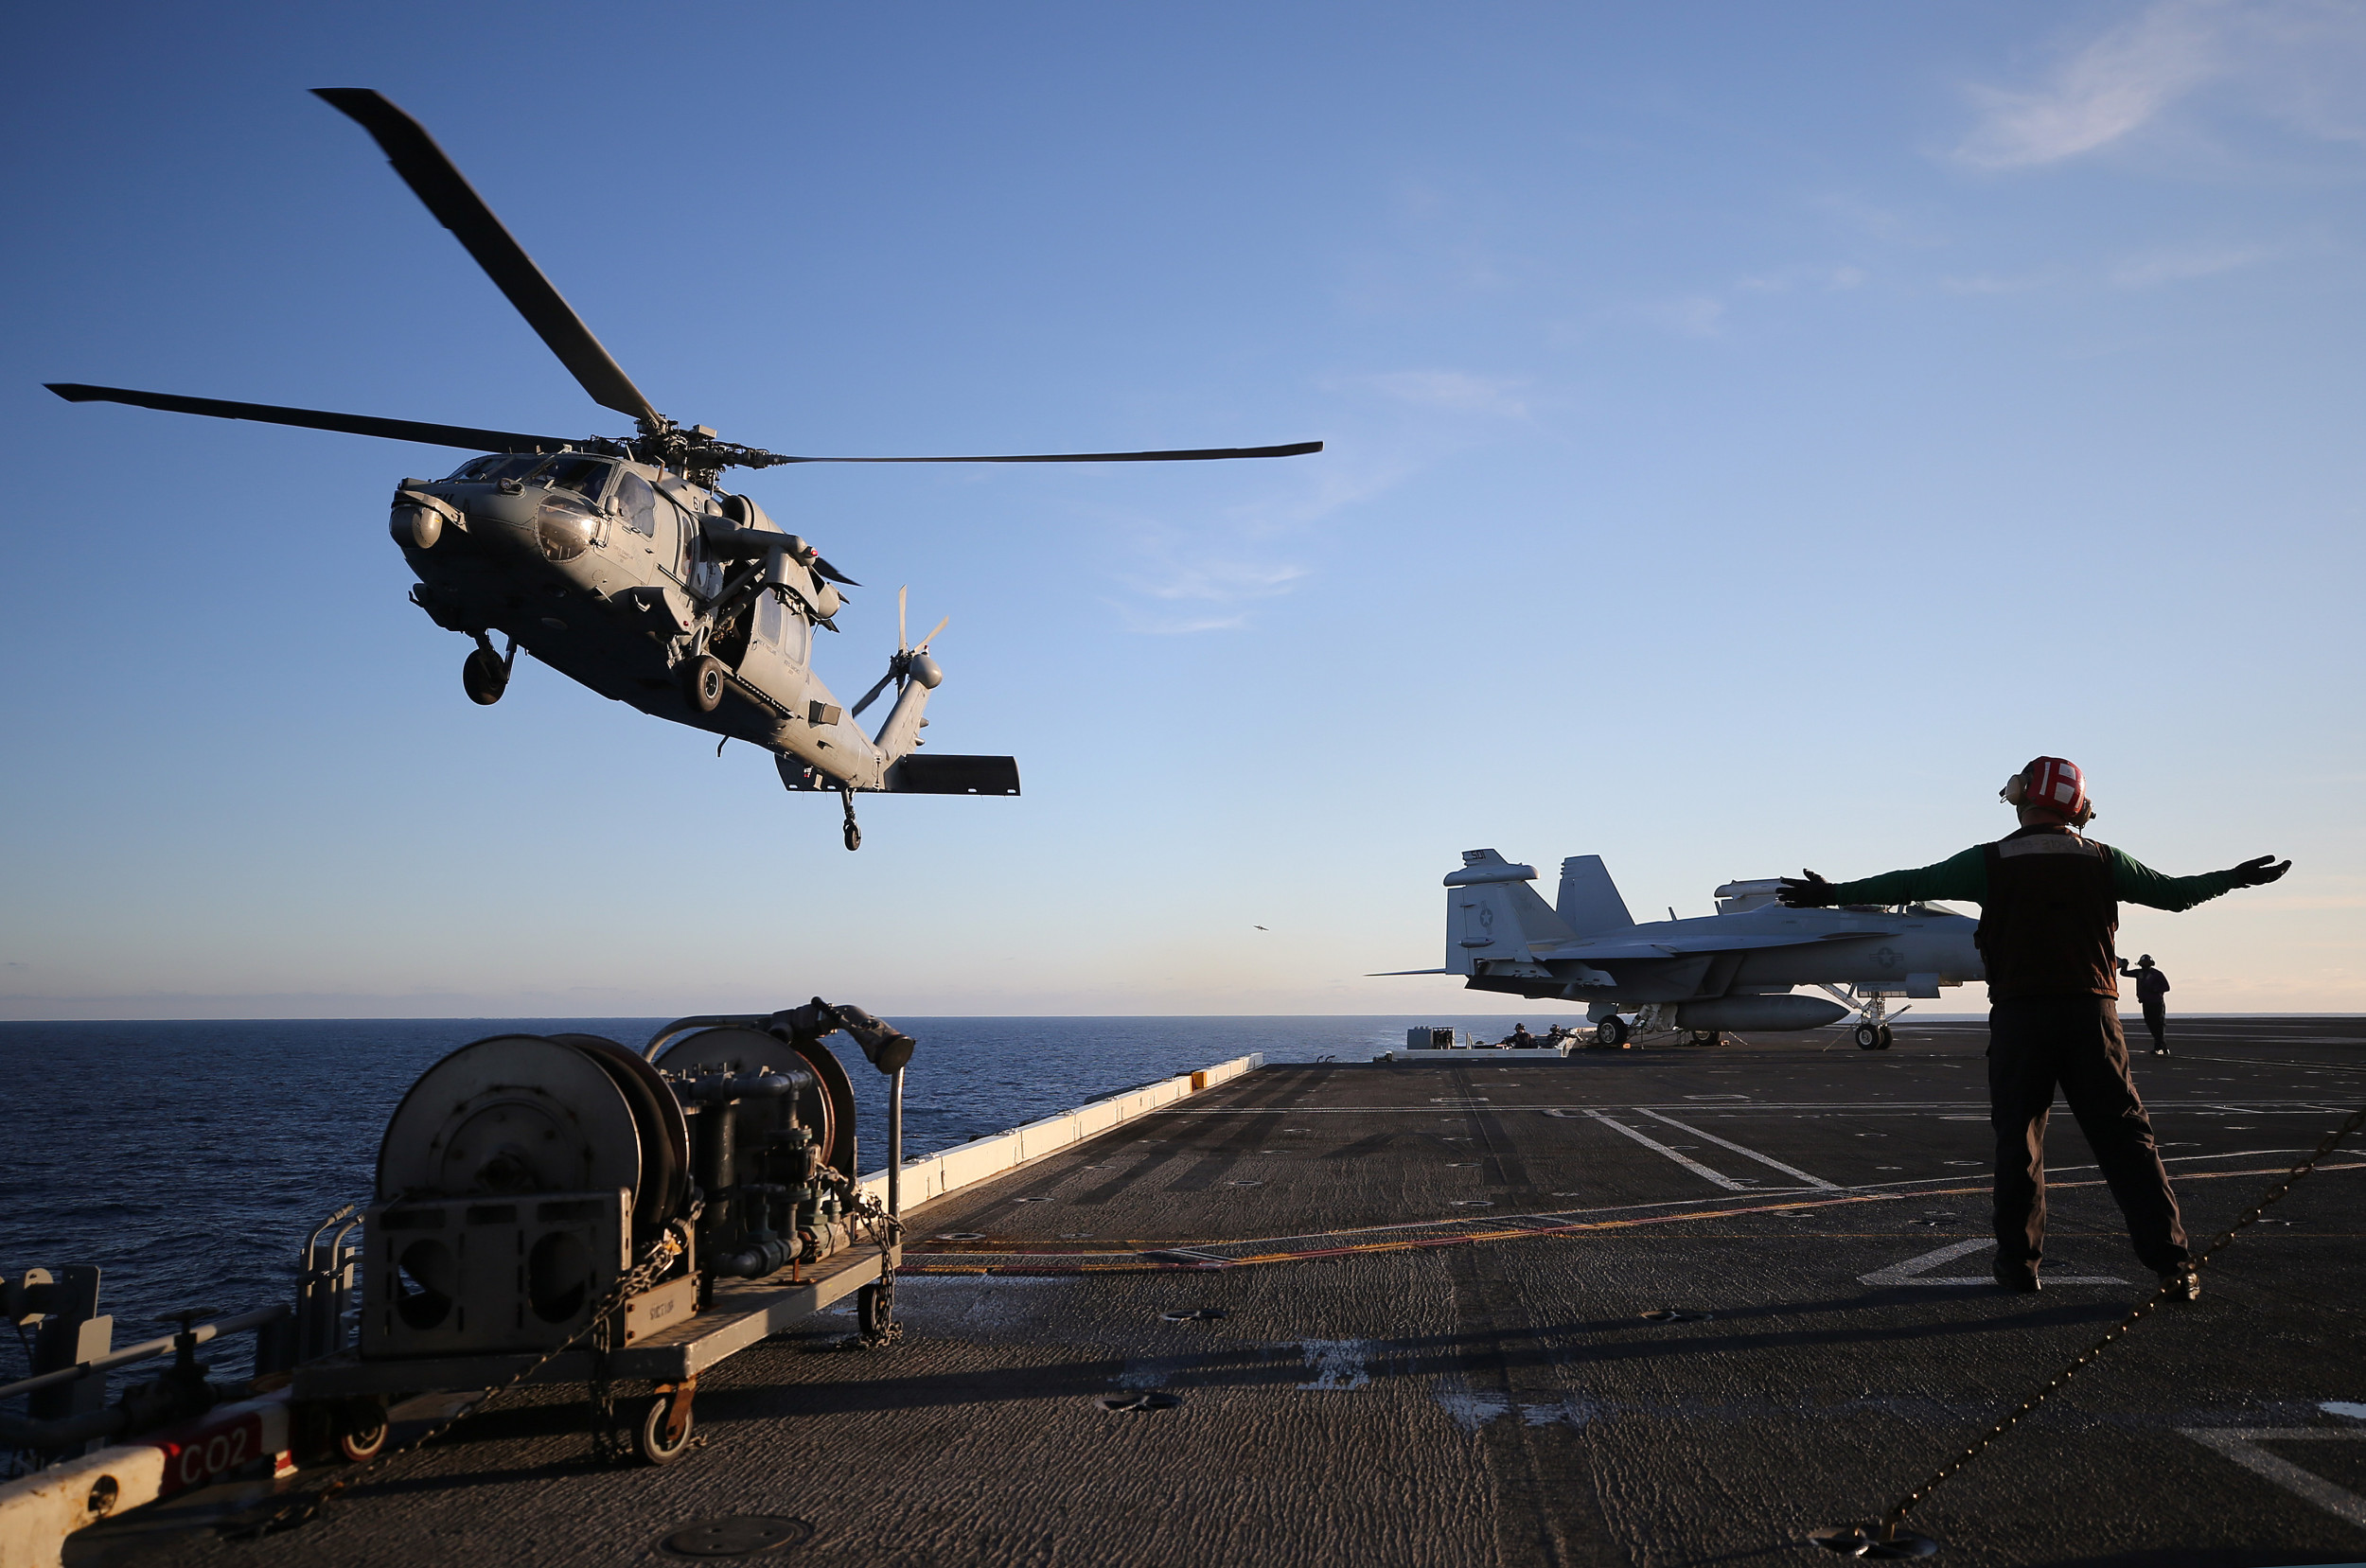 Une panne d’hélicoptère laisse tomber des missiles américains dans l’océan, incite la marine à rechercher